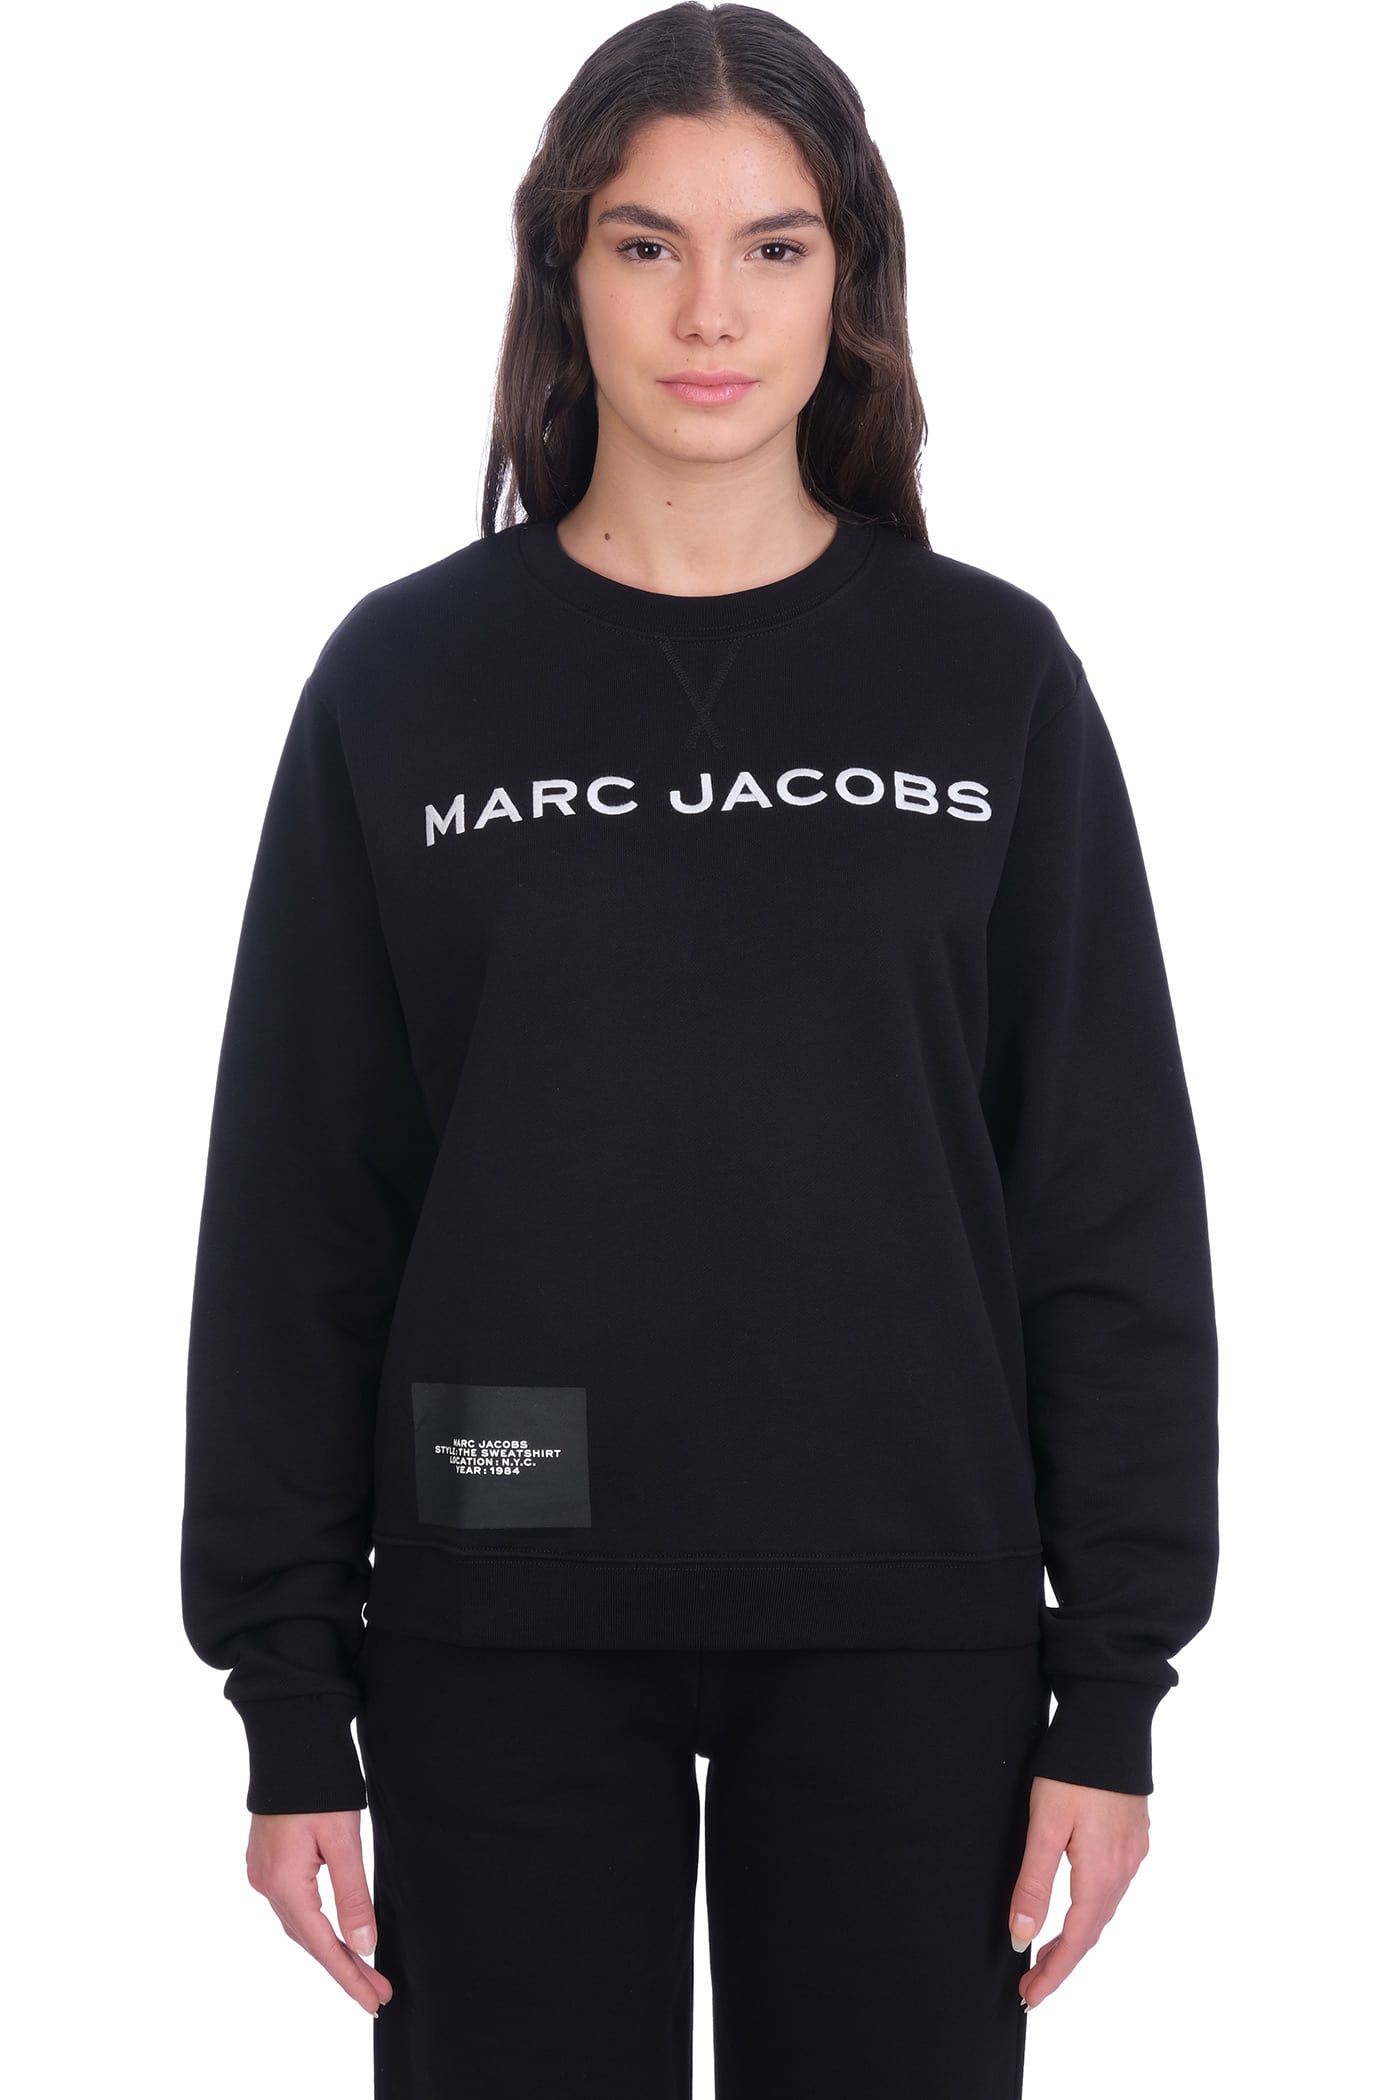 Marc Jacobs Sweatshirt In Black Cotton